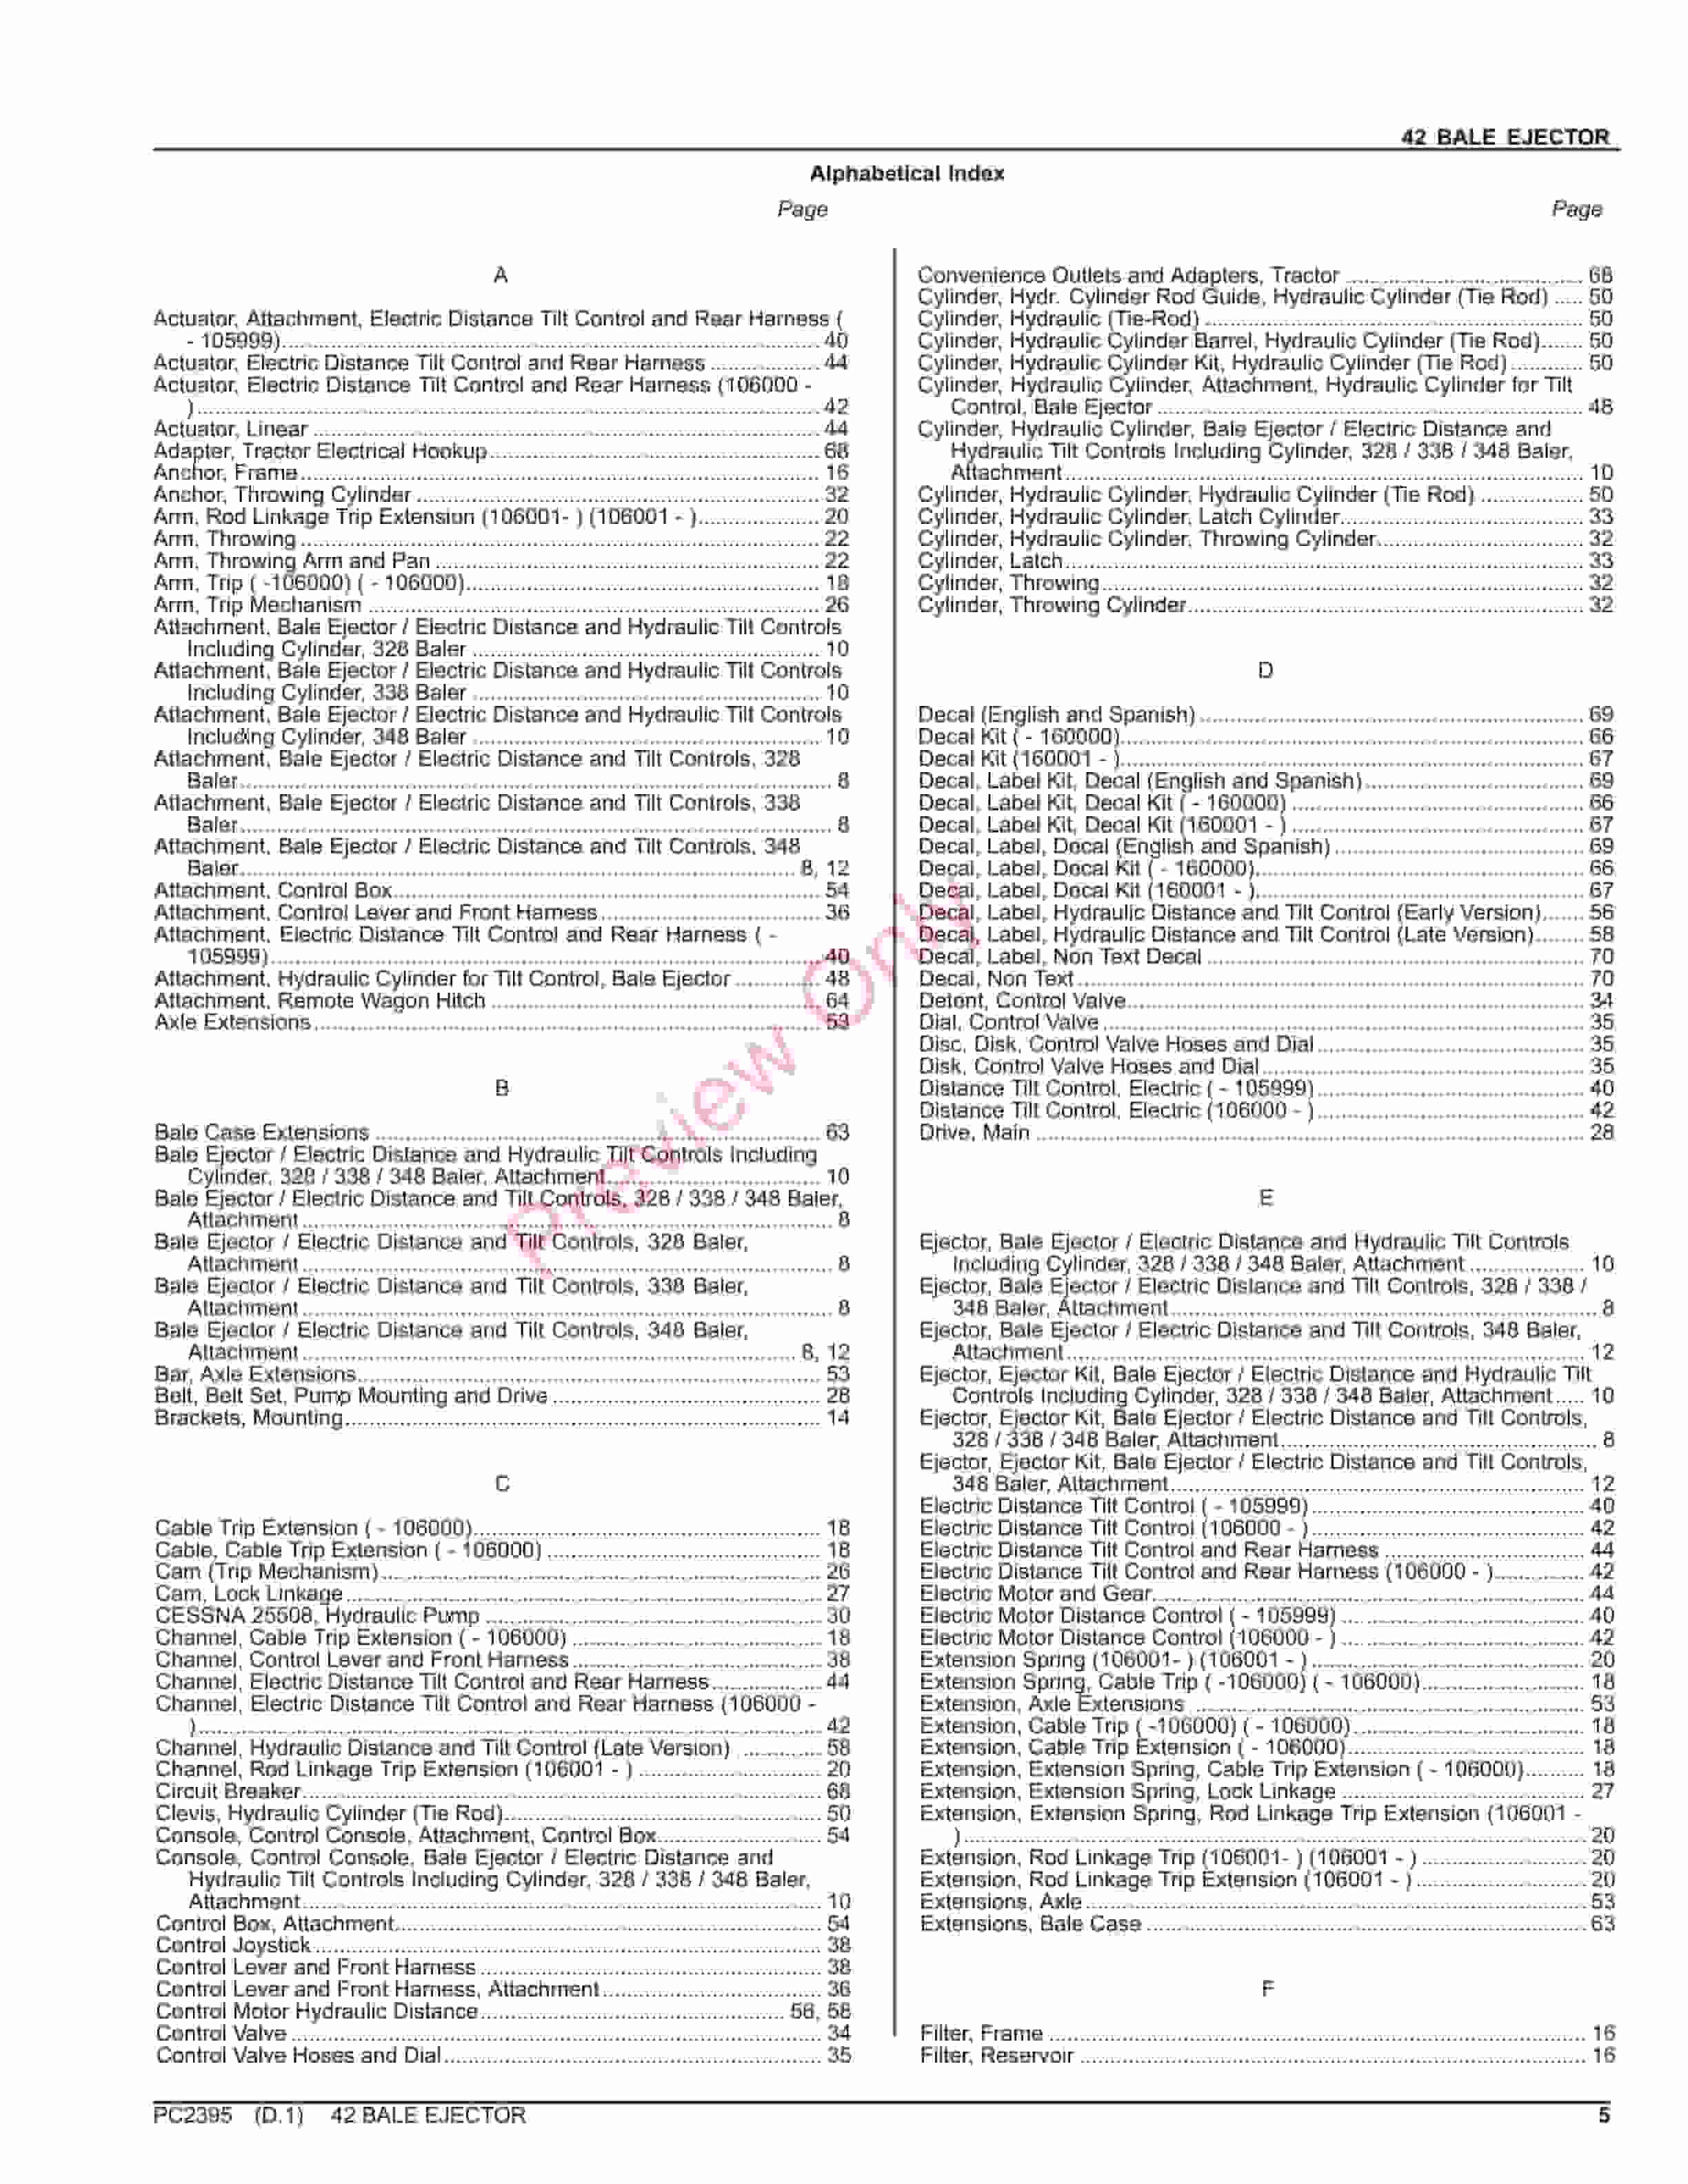 John Deere 42 BALE EJECTOR Parts Catalog PC2395 26AUG23-5